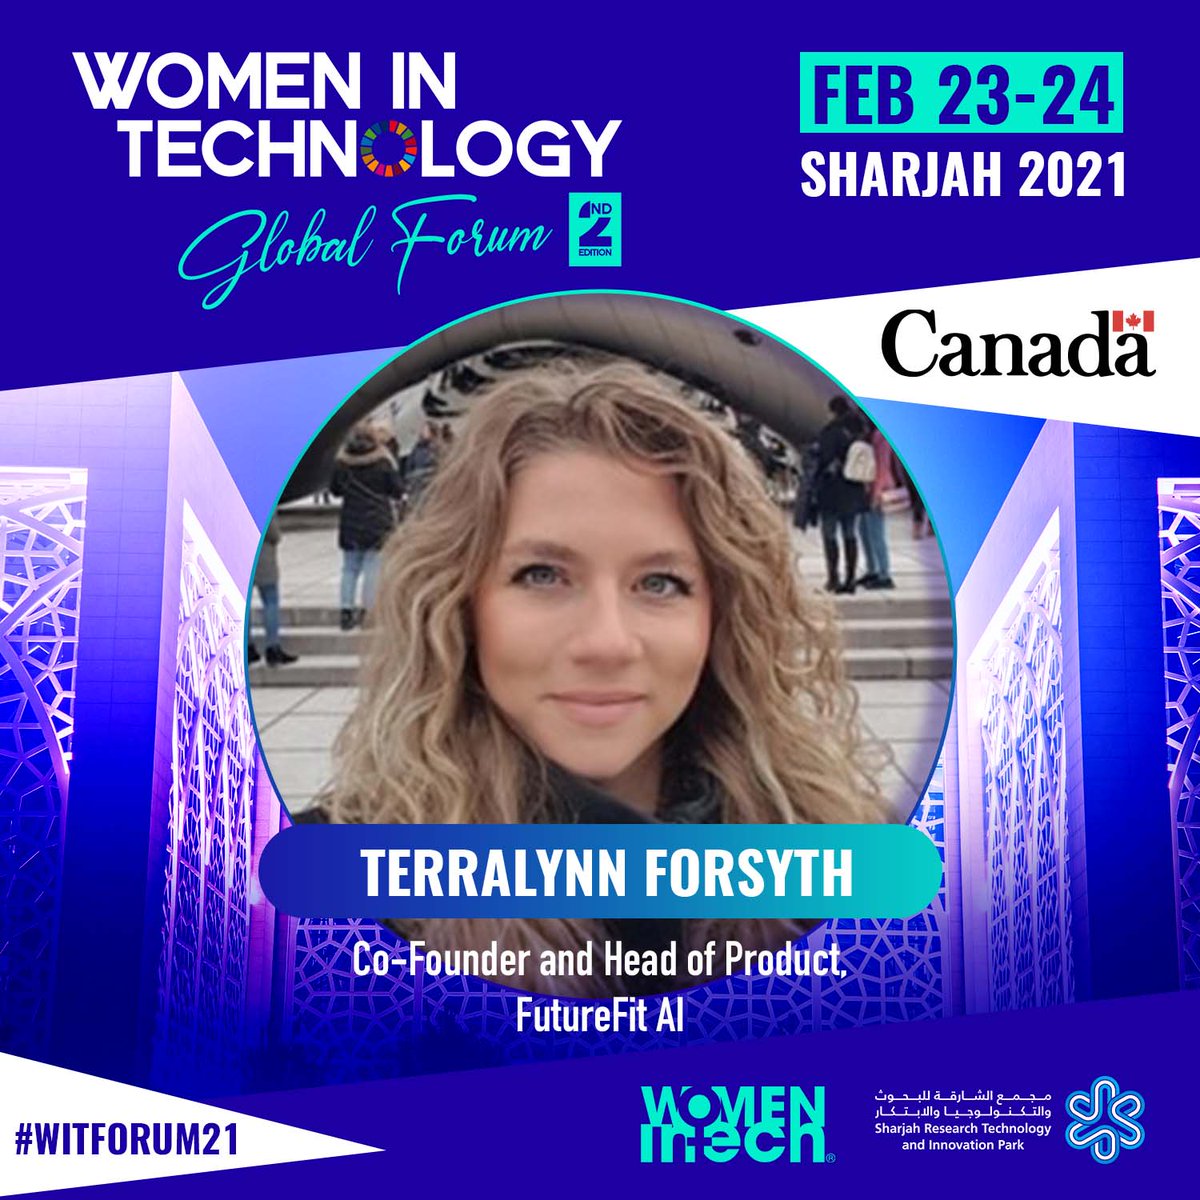 #WITForum21 | @terralynn_f est co-fondatrice et directrice produit chez @FutureFitAI. Elle rejoindra le Women in Tech Global Forum qui aura lieu les 23 et 24 février.
Inscription gratuite: womenintech-forum.com cc @WomenInTechOrg #womenintech